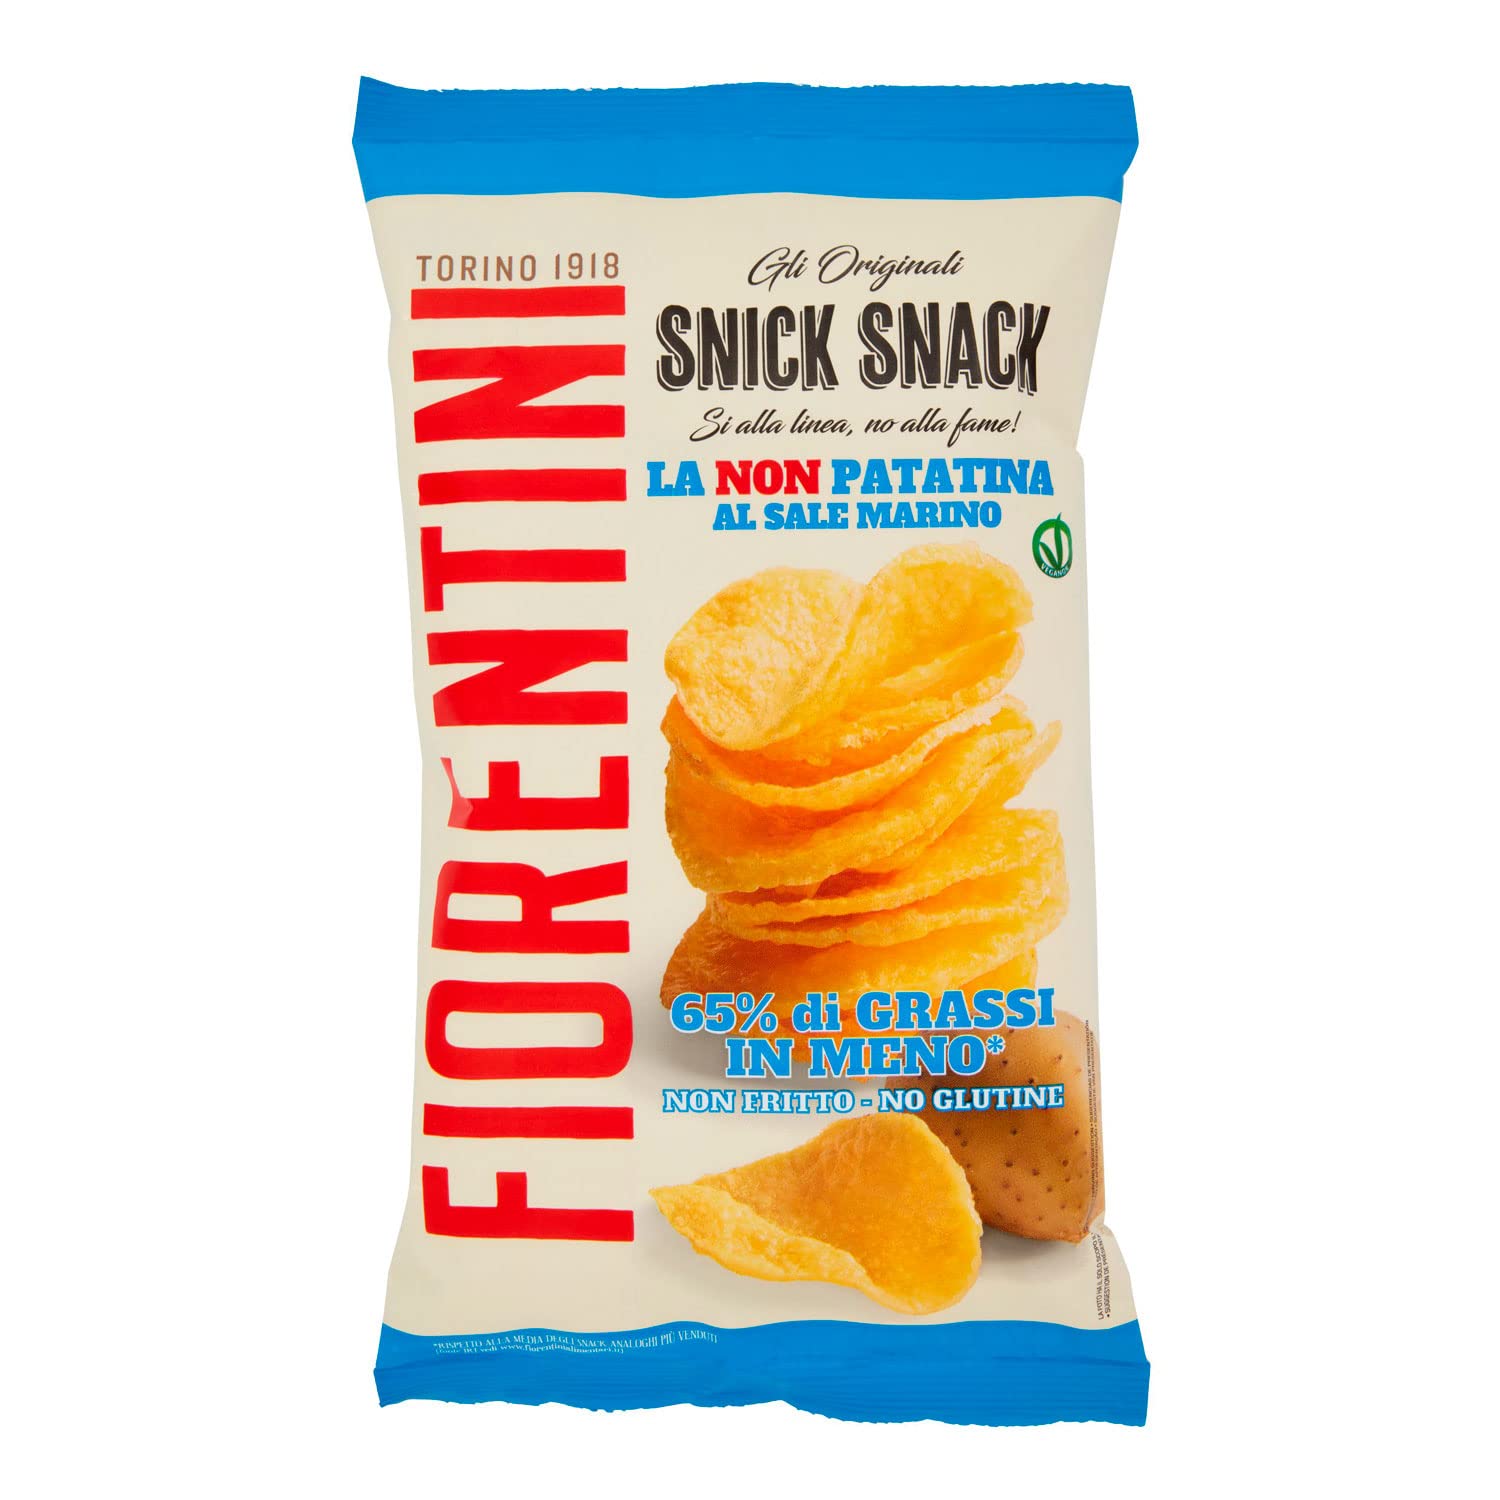 Snick Snack - 70 g Fiorentini sale marino 01-0350